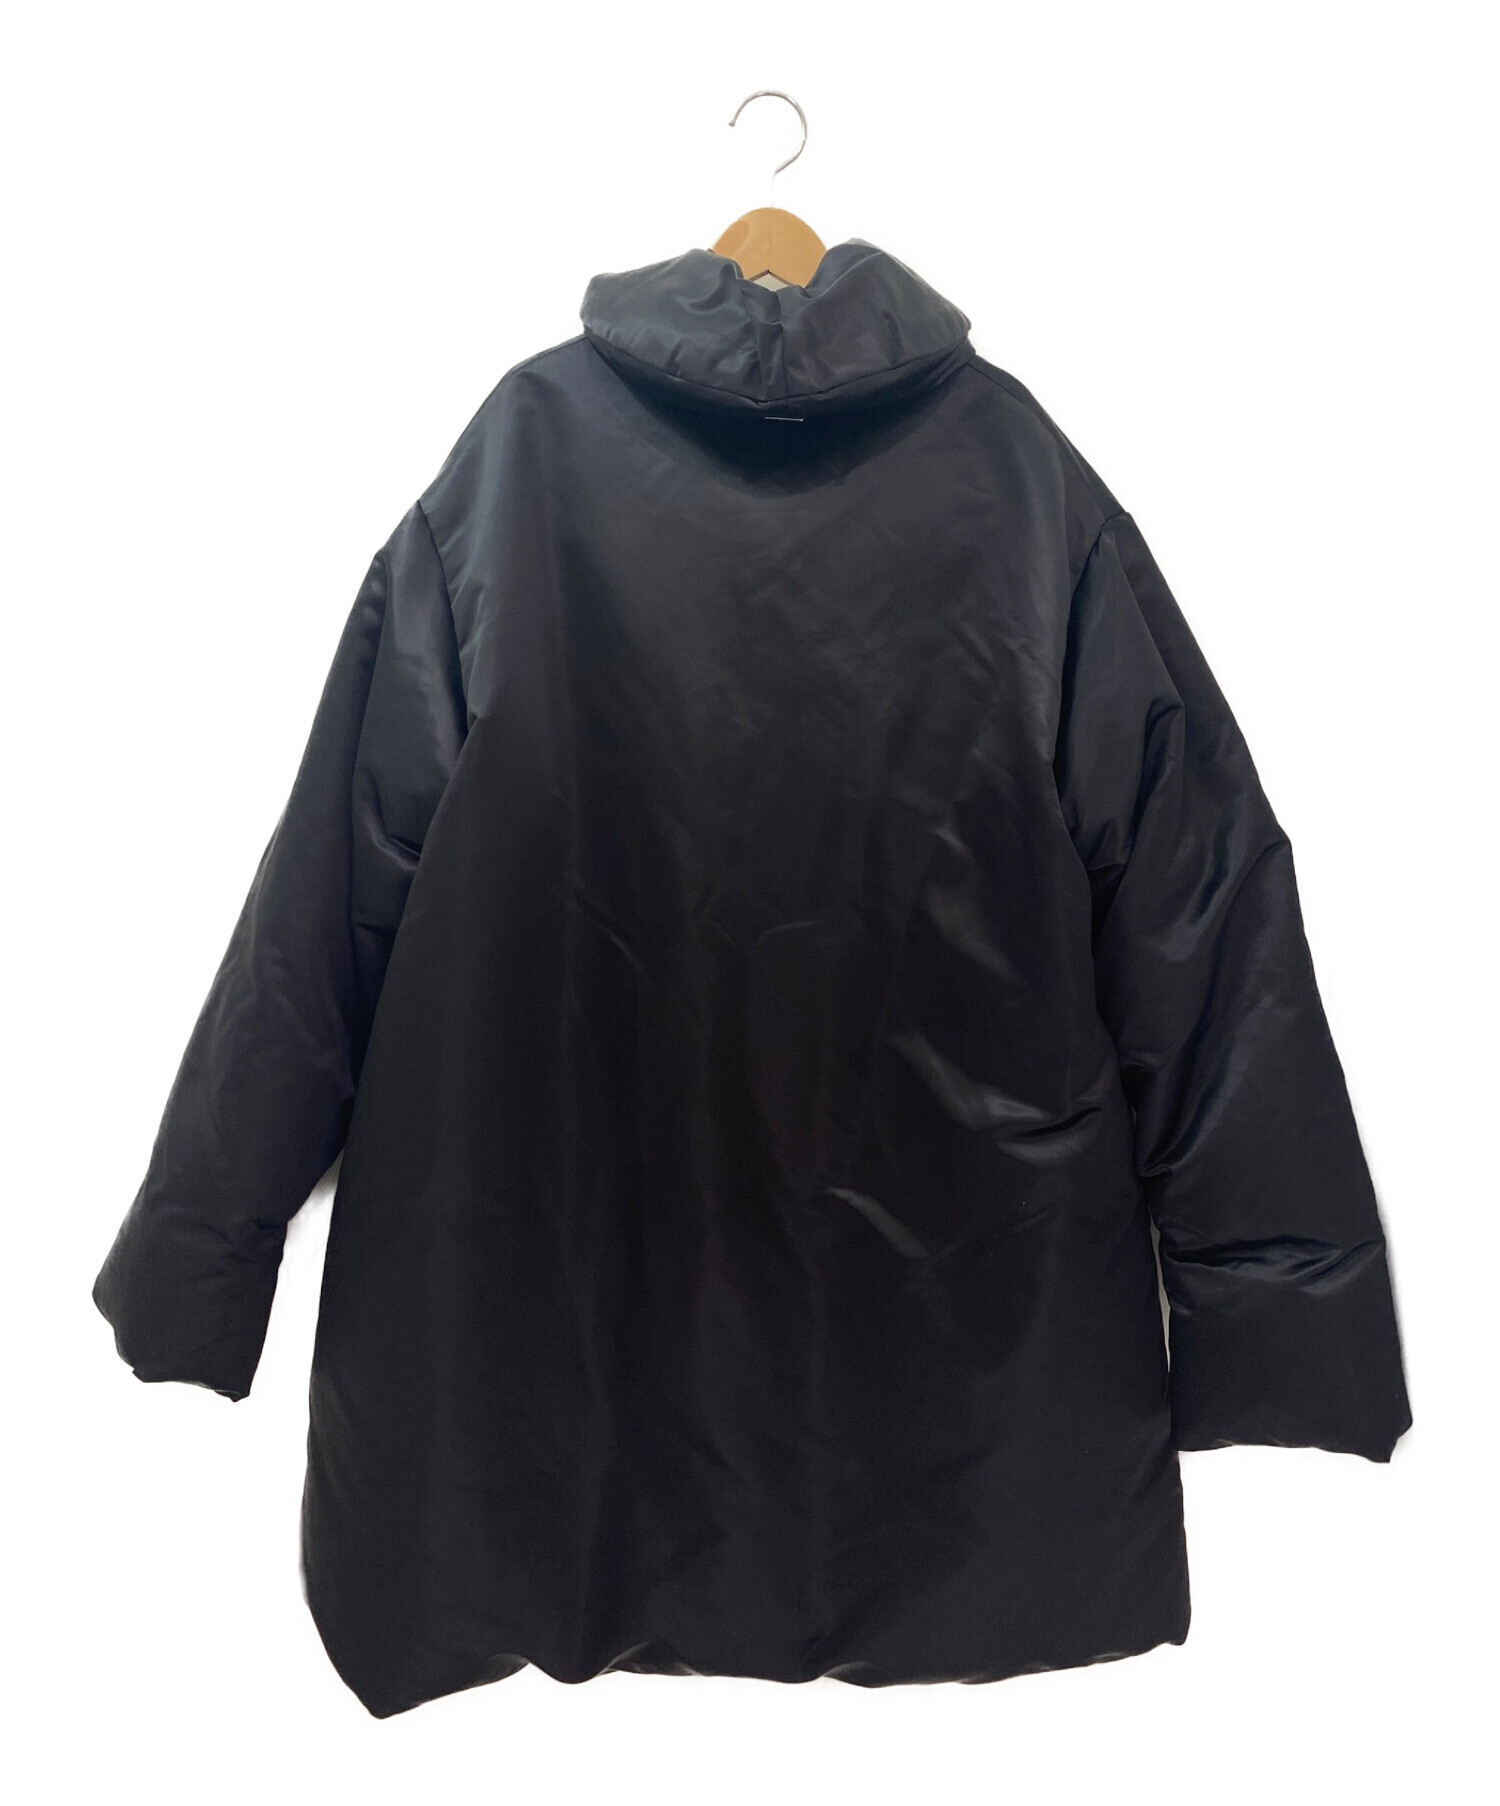 MM6 Maison Margiela (エムエムシックス メゾンマルジェラ) Padded coat ブラック サイズ:38